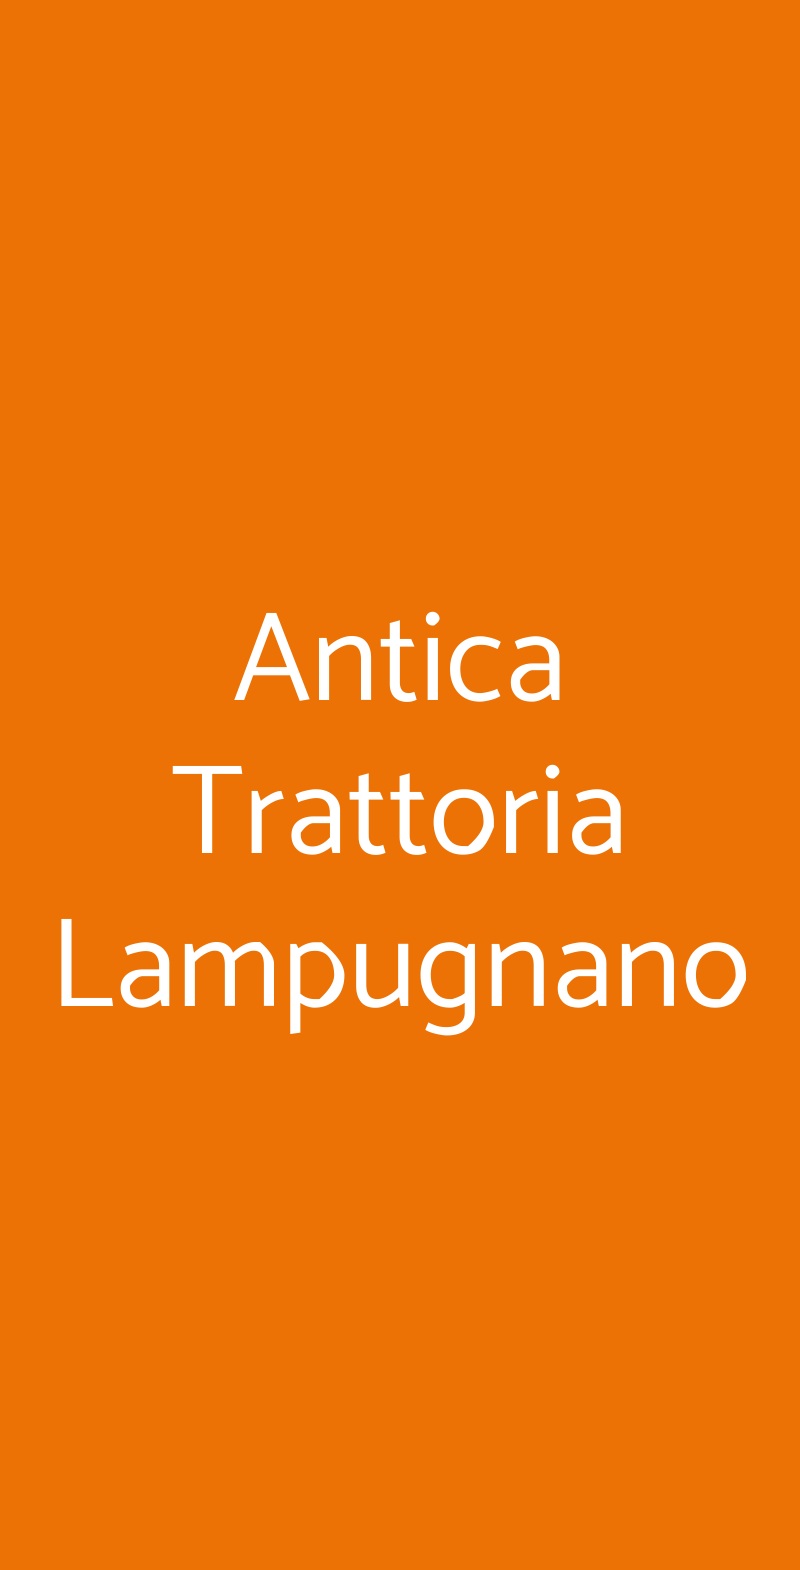 Antica Trattoria Lampugnano Milano menù 1 pagina